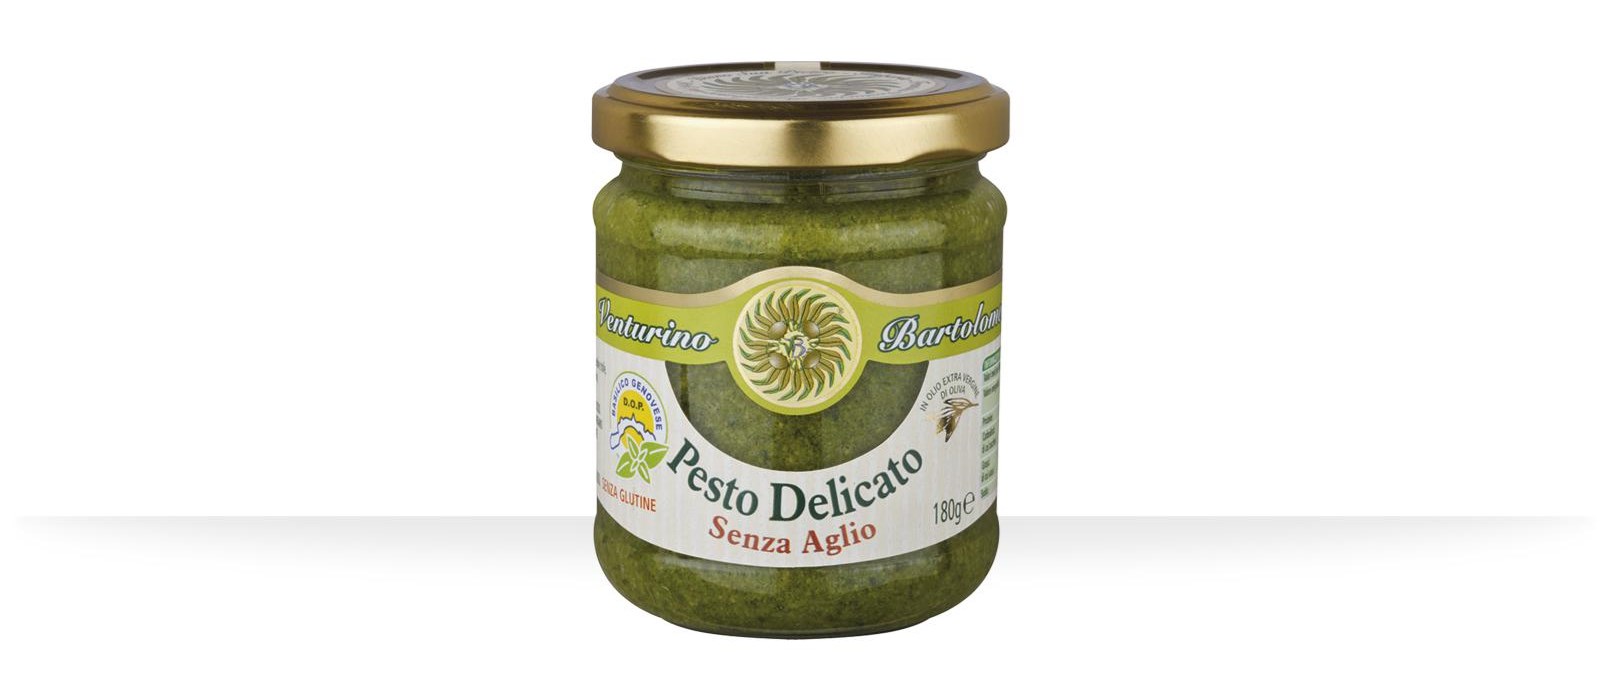 Pesto “Delicato” without garlic